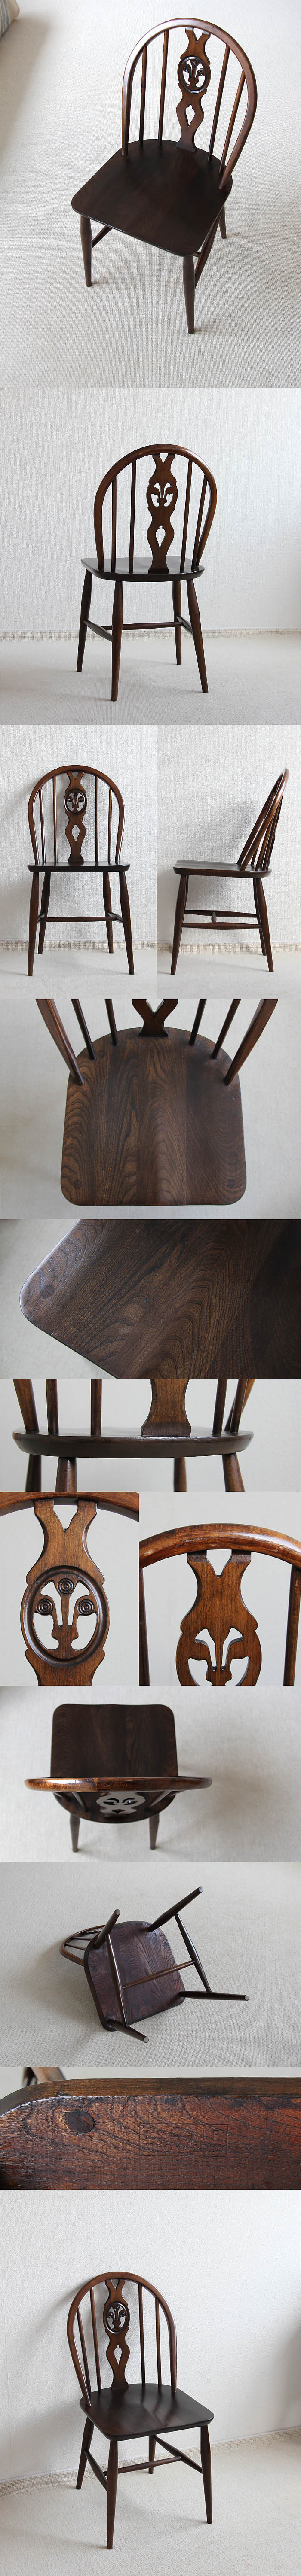 イギリス ヴィンテージ アーコールチェア ERCOL 木製椅子 アンティーク 家具「シスルバック」V-935